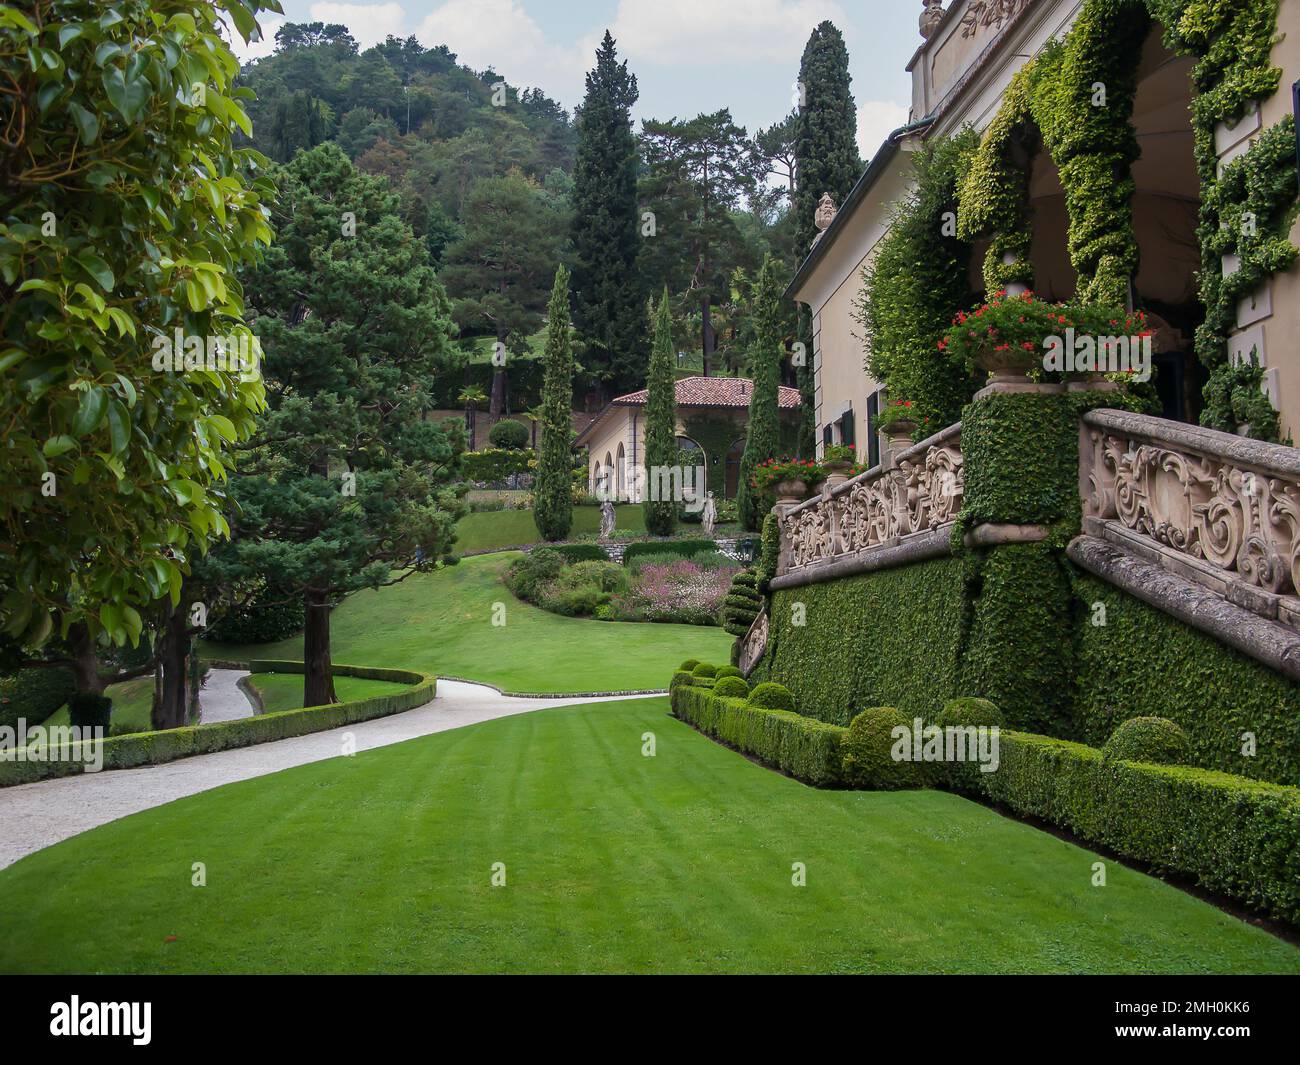 Wunderschöne Aussicht, grüne Rasenflächen, Bäume, Büsche und Skulpturen der Villa Balbianello, Lenno, des Сomo-Sees, Tremezzina, Italien Stockfoto